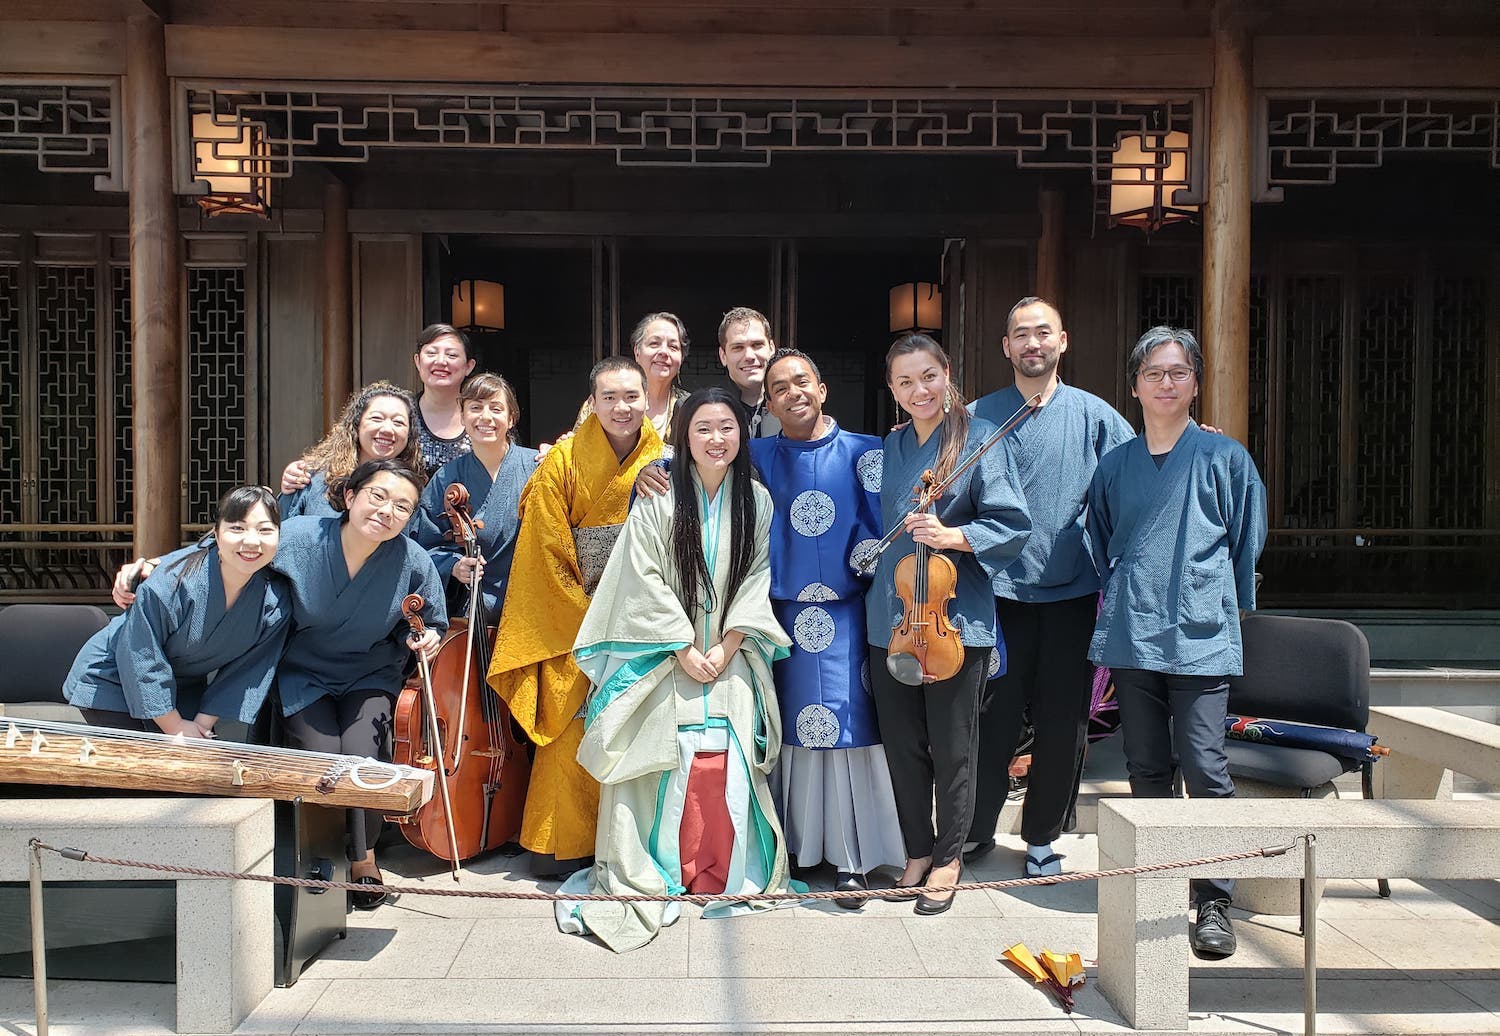 2019年、メトロポリタン美術館主催・源氏物語をテーマとする新作オペラ「紫の月」にて。この公演では、箏歌でオペラ歌手と共演。